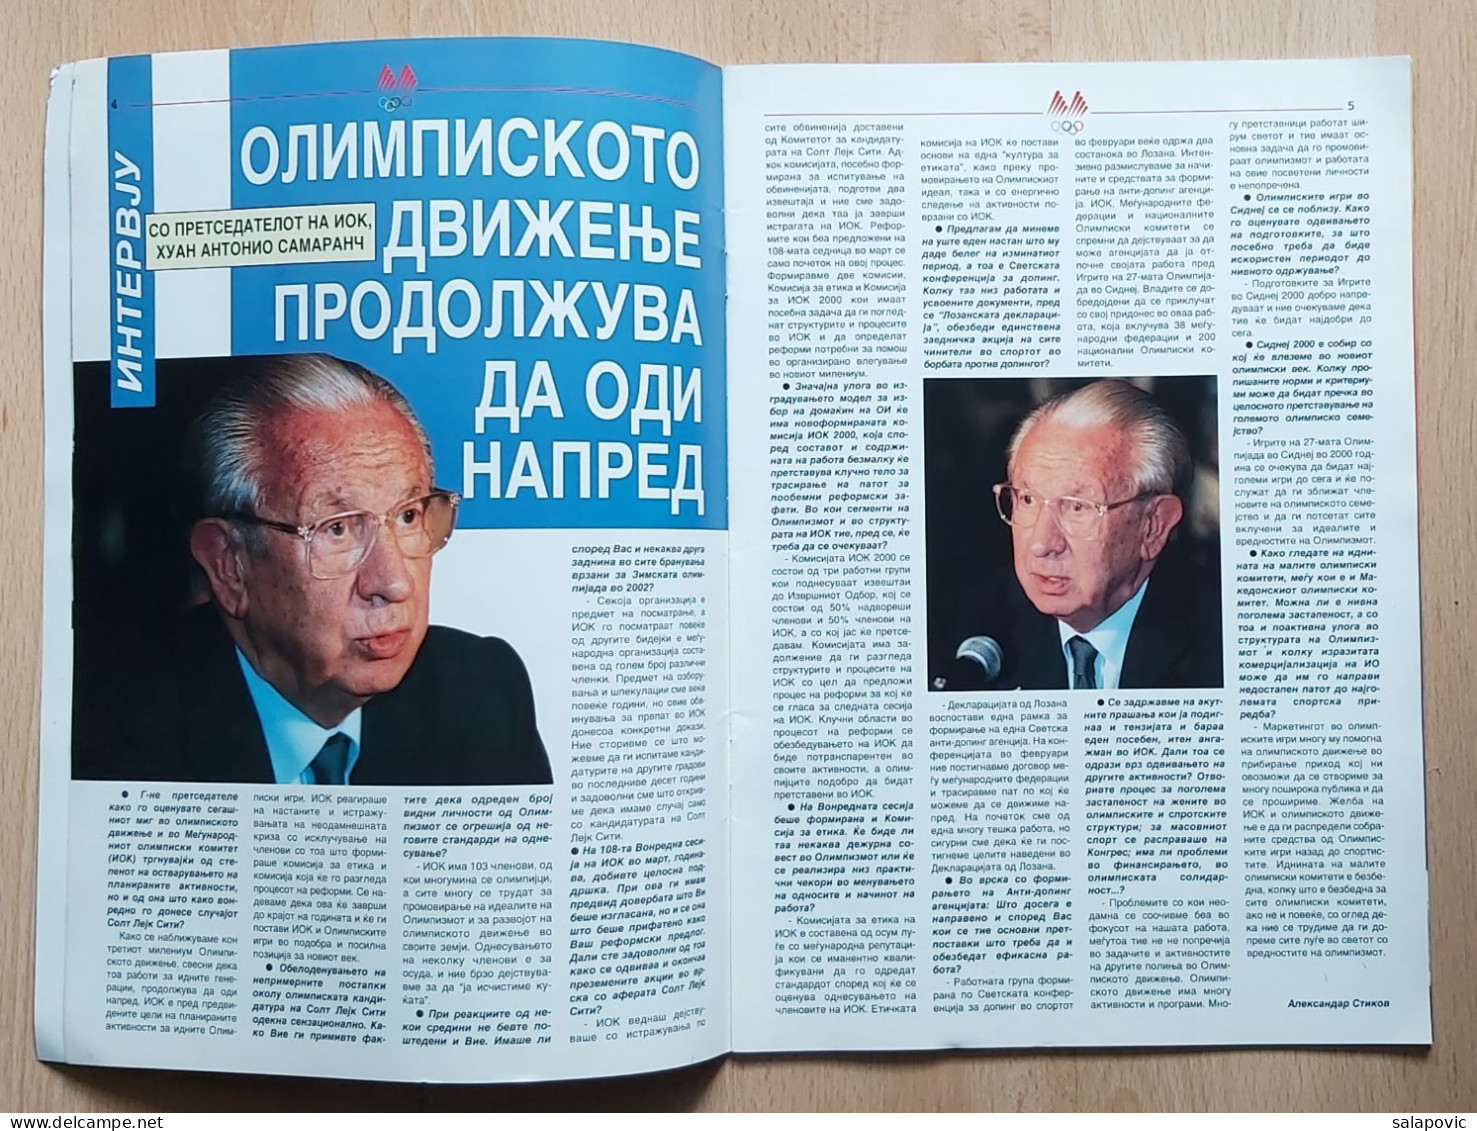 Revija MOK Macedonia, Macedonian Olympic Committee Magazine N° 3, June 1999 - Books